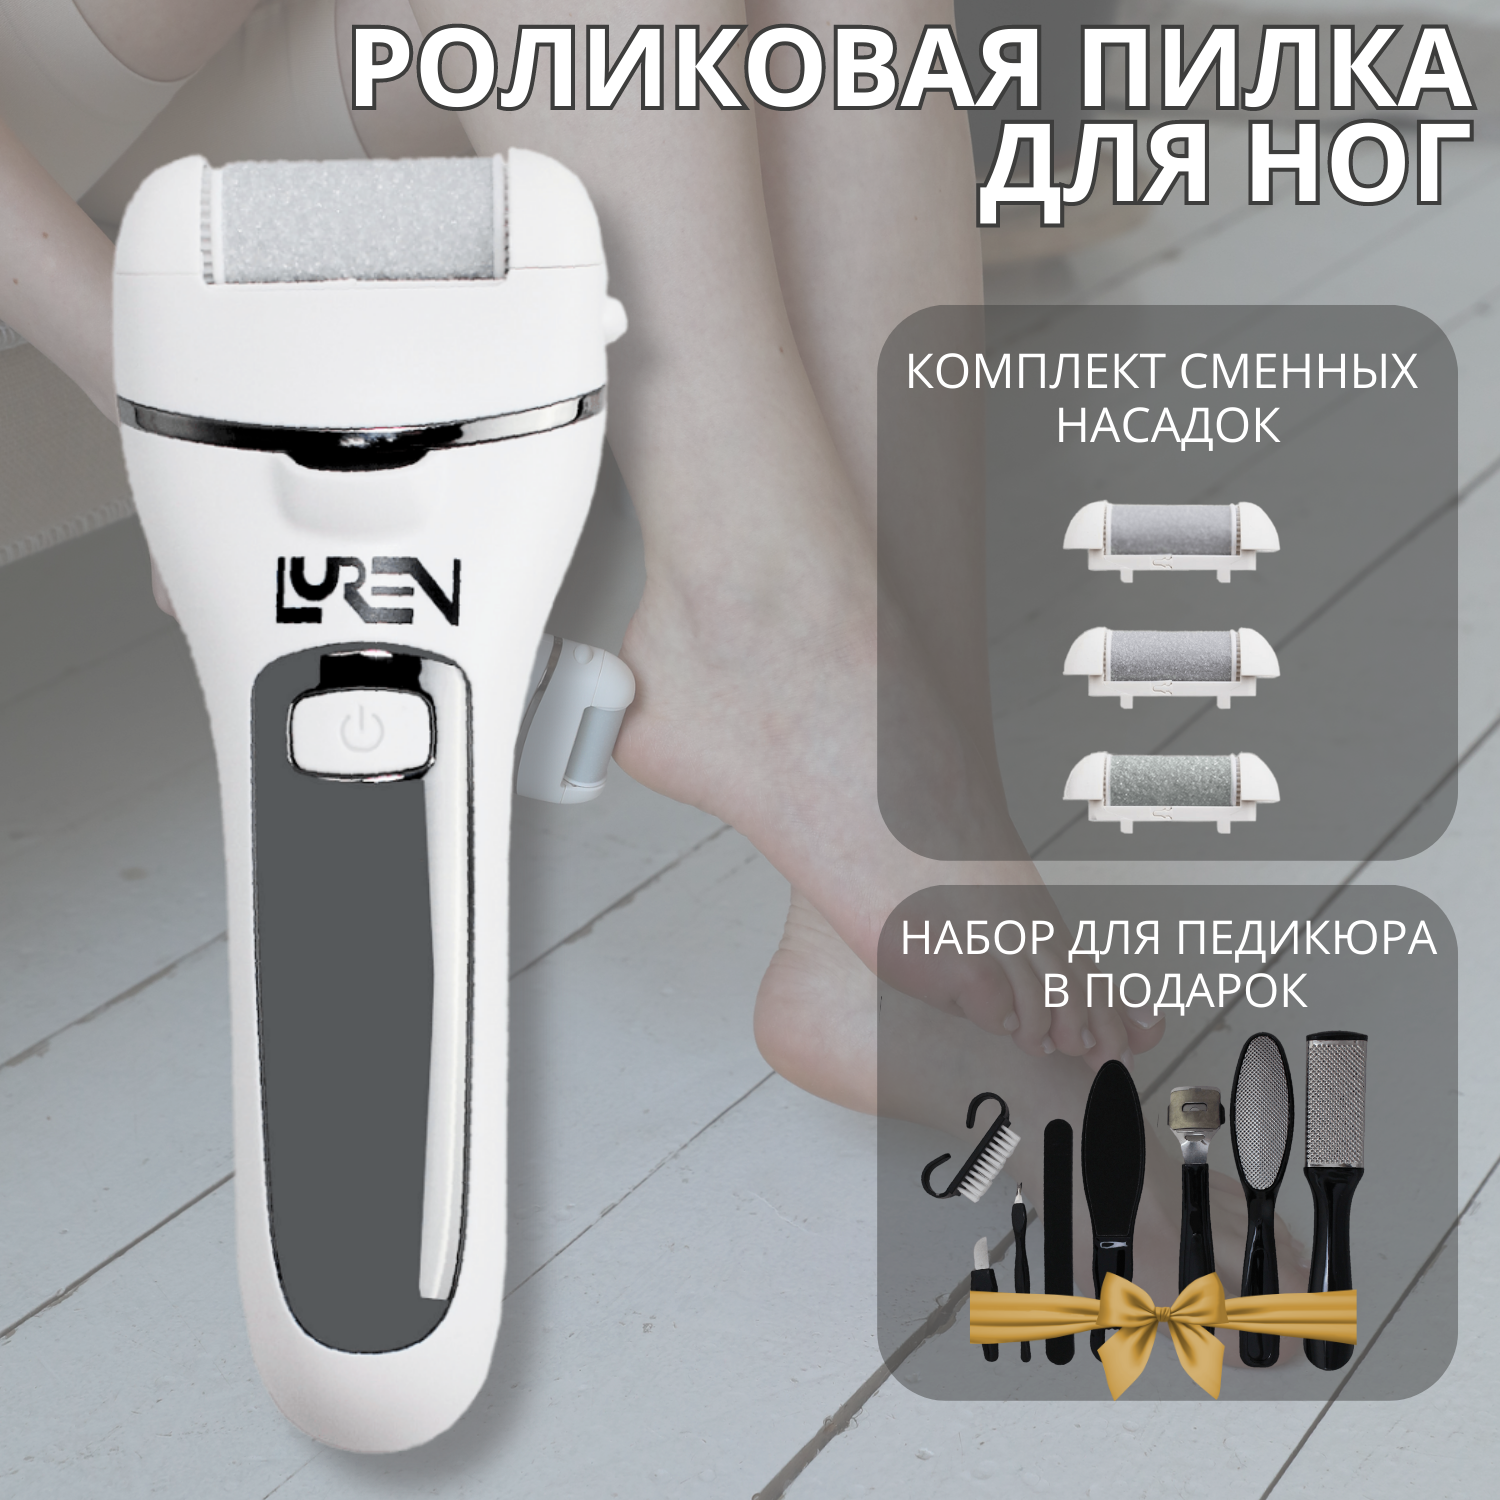 Электрическая пилка для ног Luren СА29063 прибор для ухода за ногами набор для педикюра сколько лет твоей душе